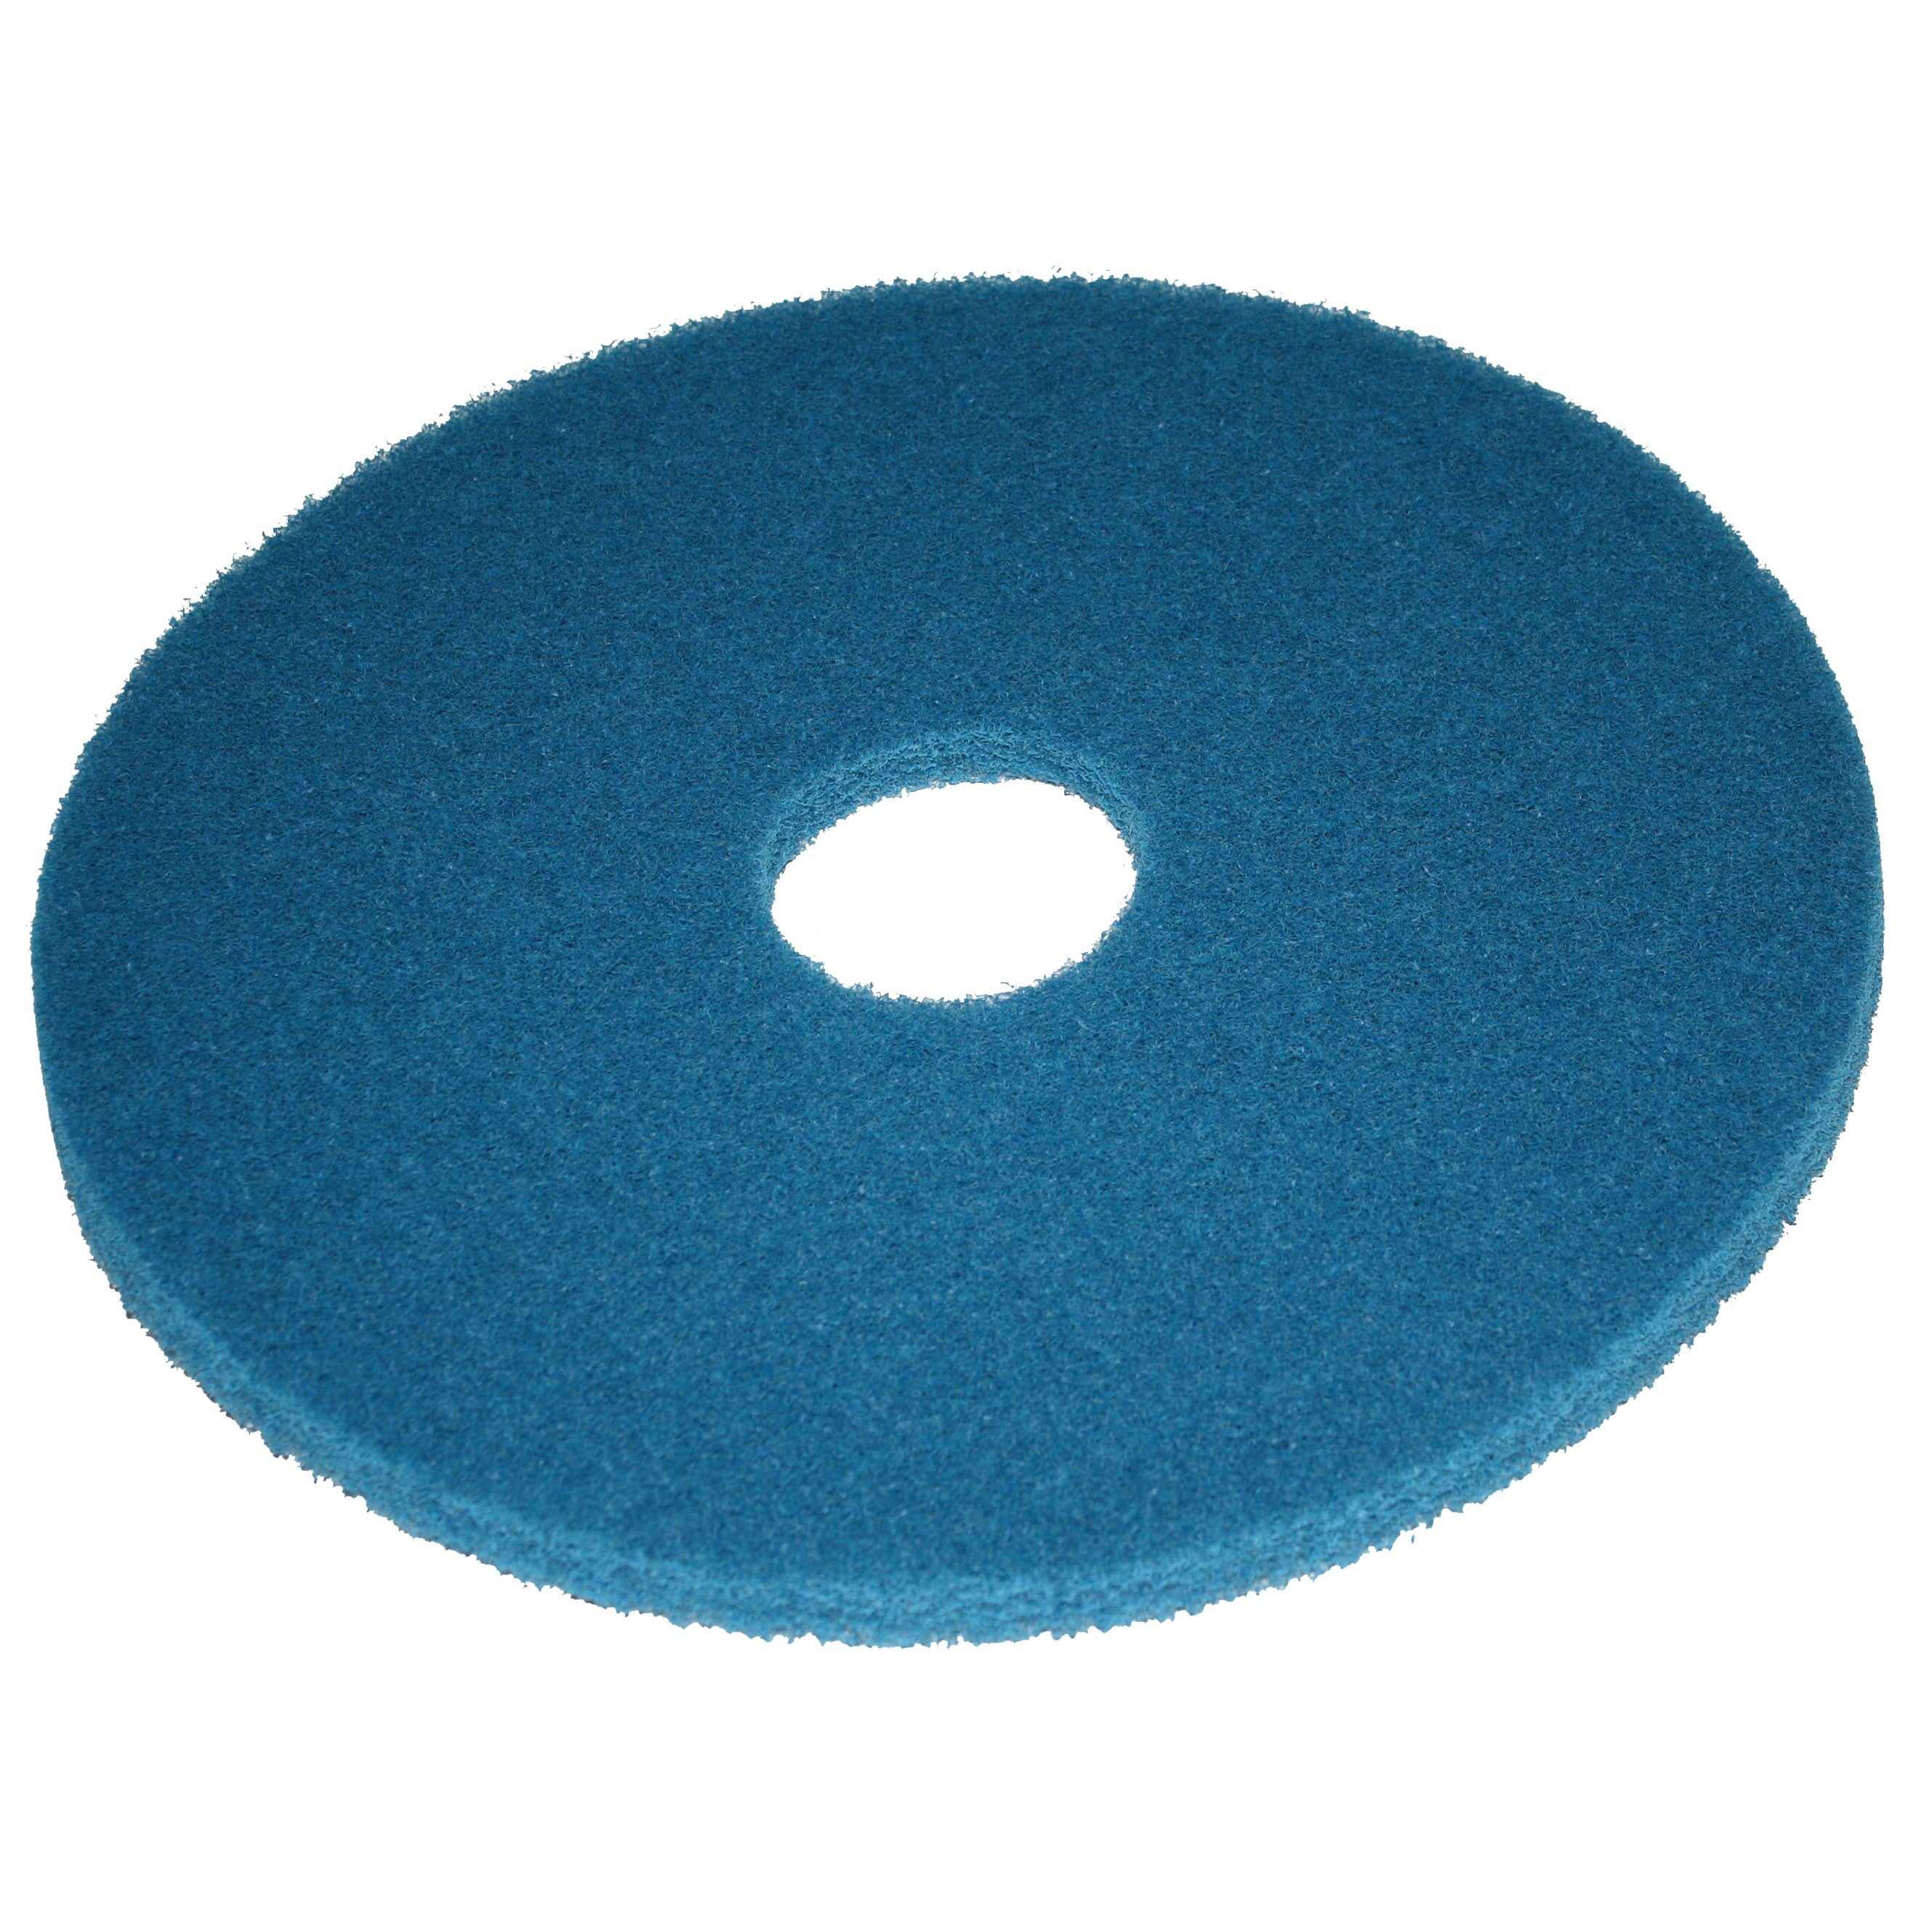 Pad bleu, Ø 305 mm, polyester